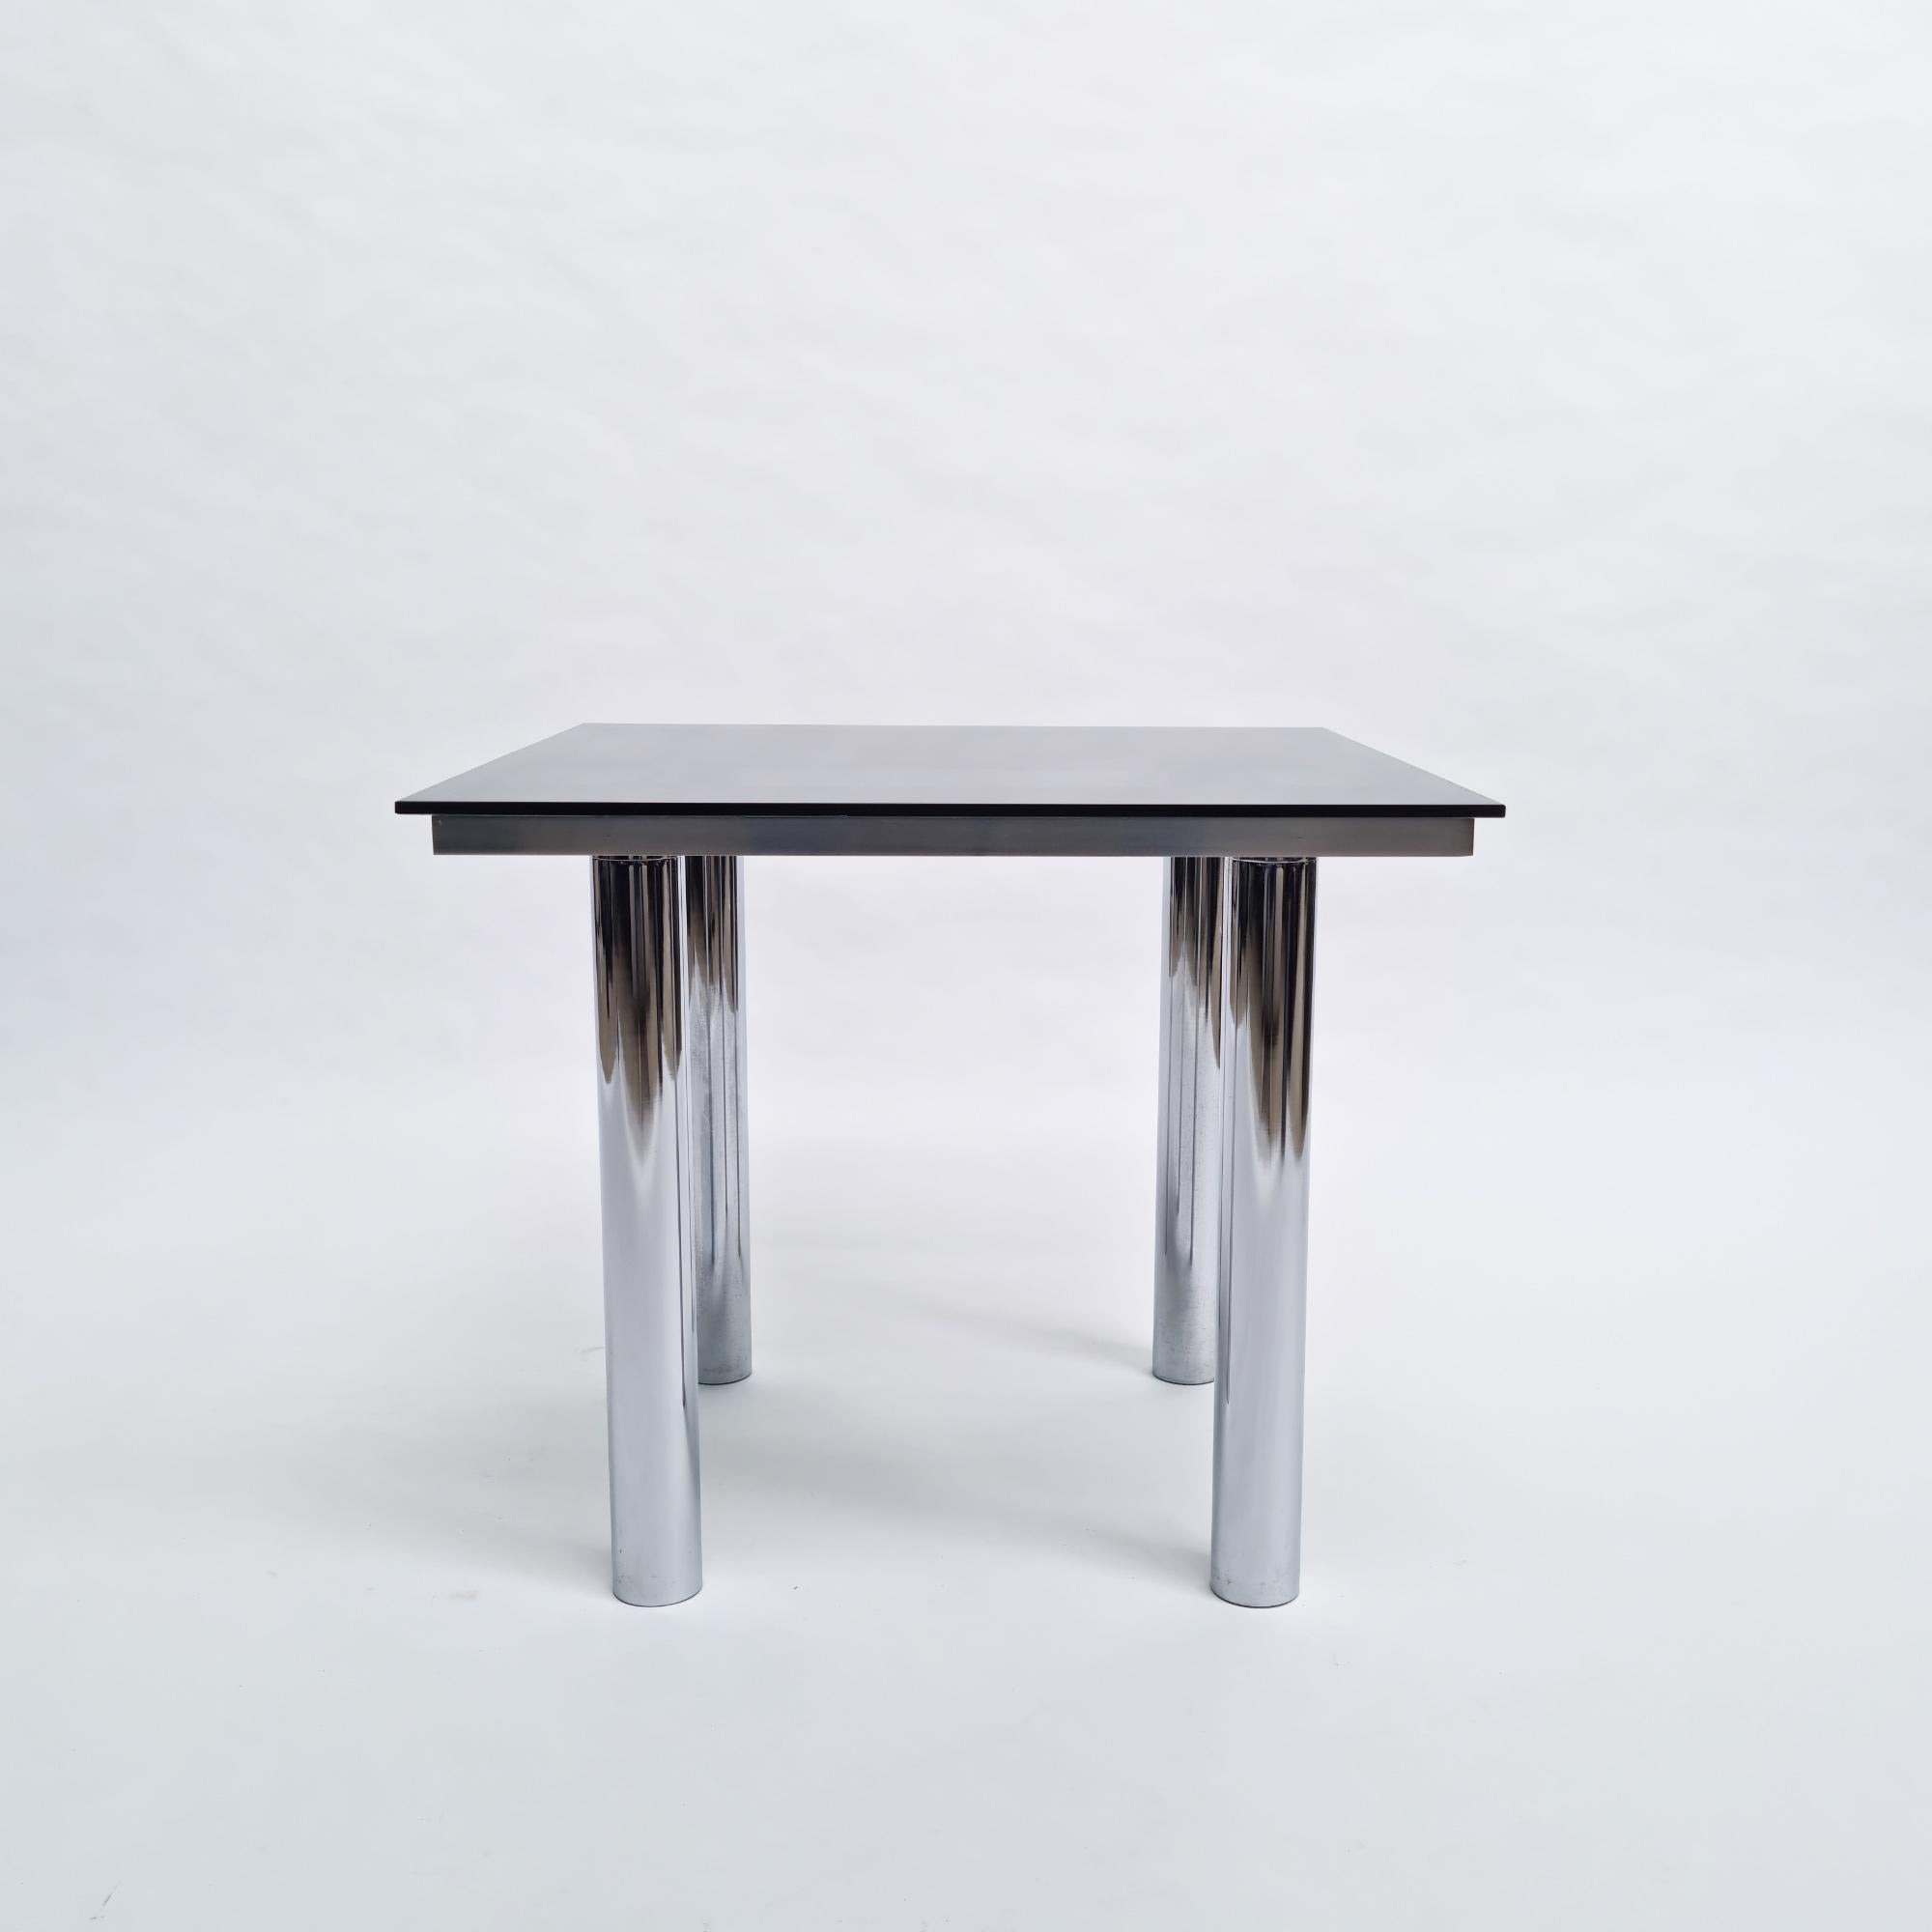 Table d'appoint modèle 'André' de 1969 créée par Tobia Scarpa et fabriquée par Knoll International/De Coene. Structure en acier chromé, pieds réglables, verre fumé.